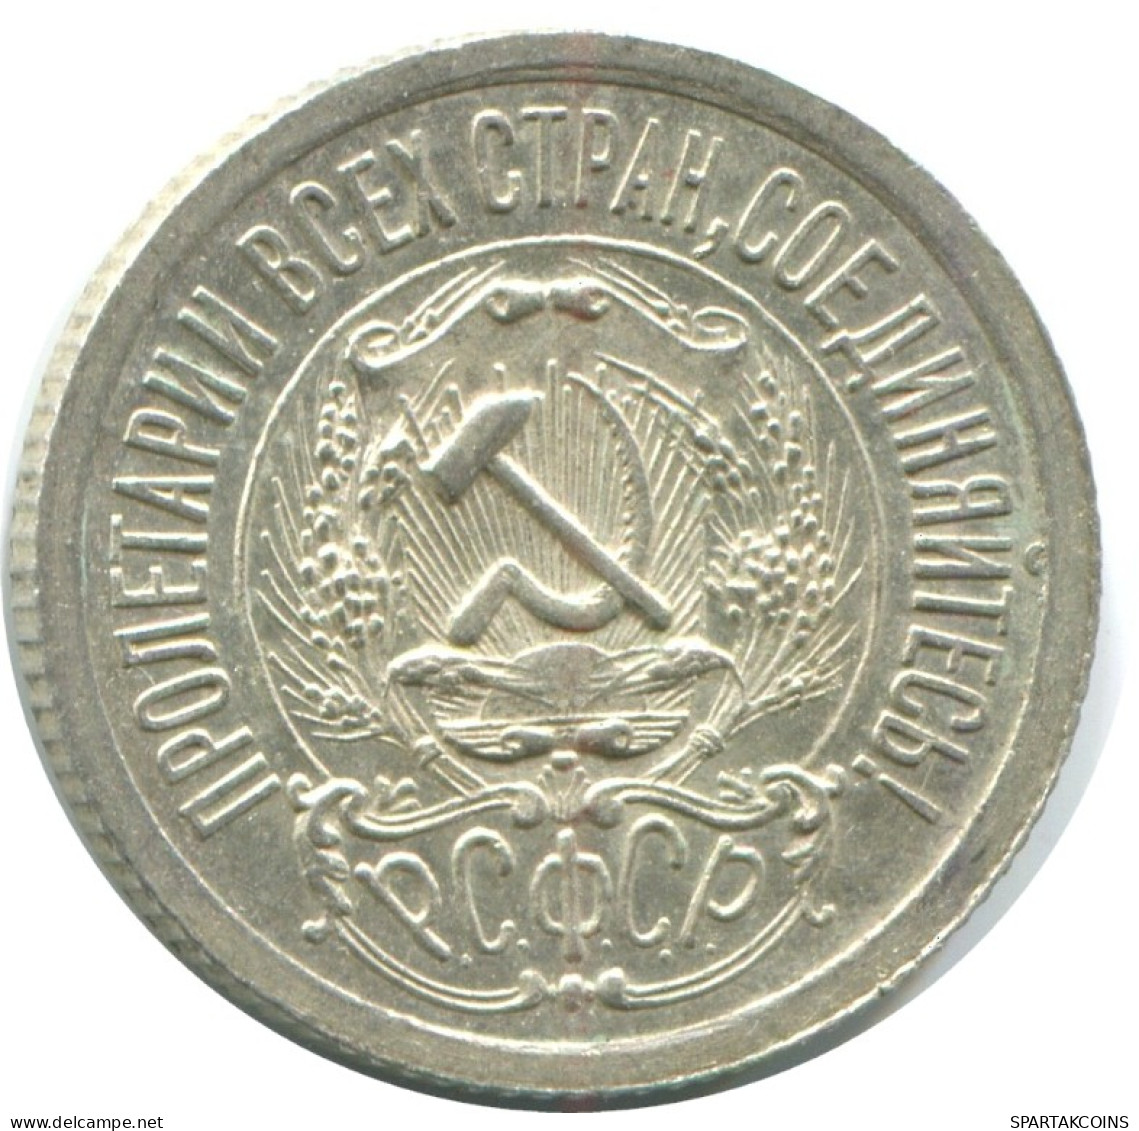 15 KOPEKS 1923 RUSSLAND RUSSIA RSFSR SILBER Münze HIGH GRADE #AF083.4.D.A - Rusia